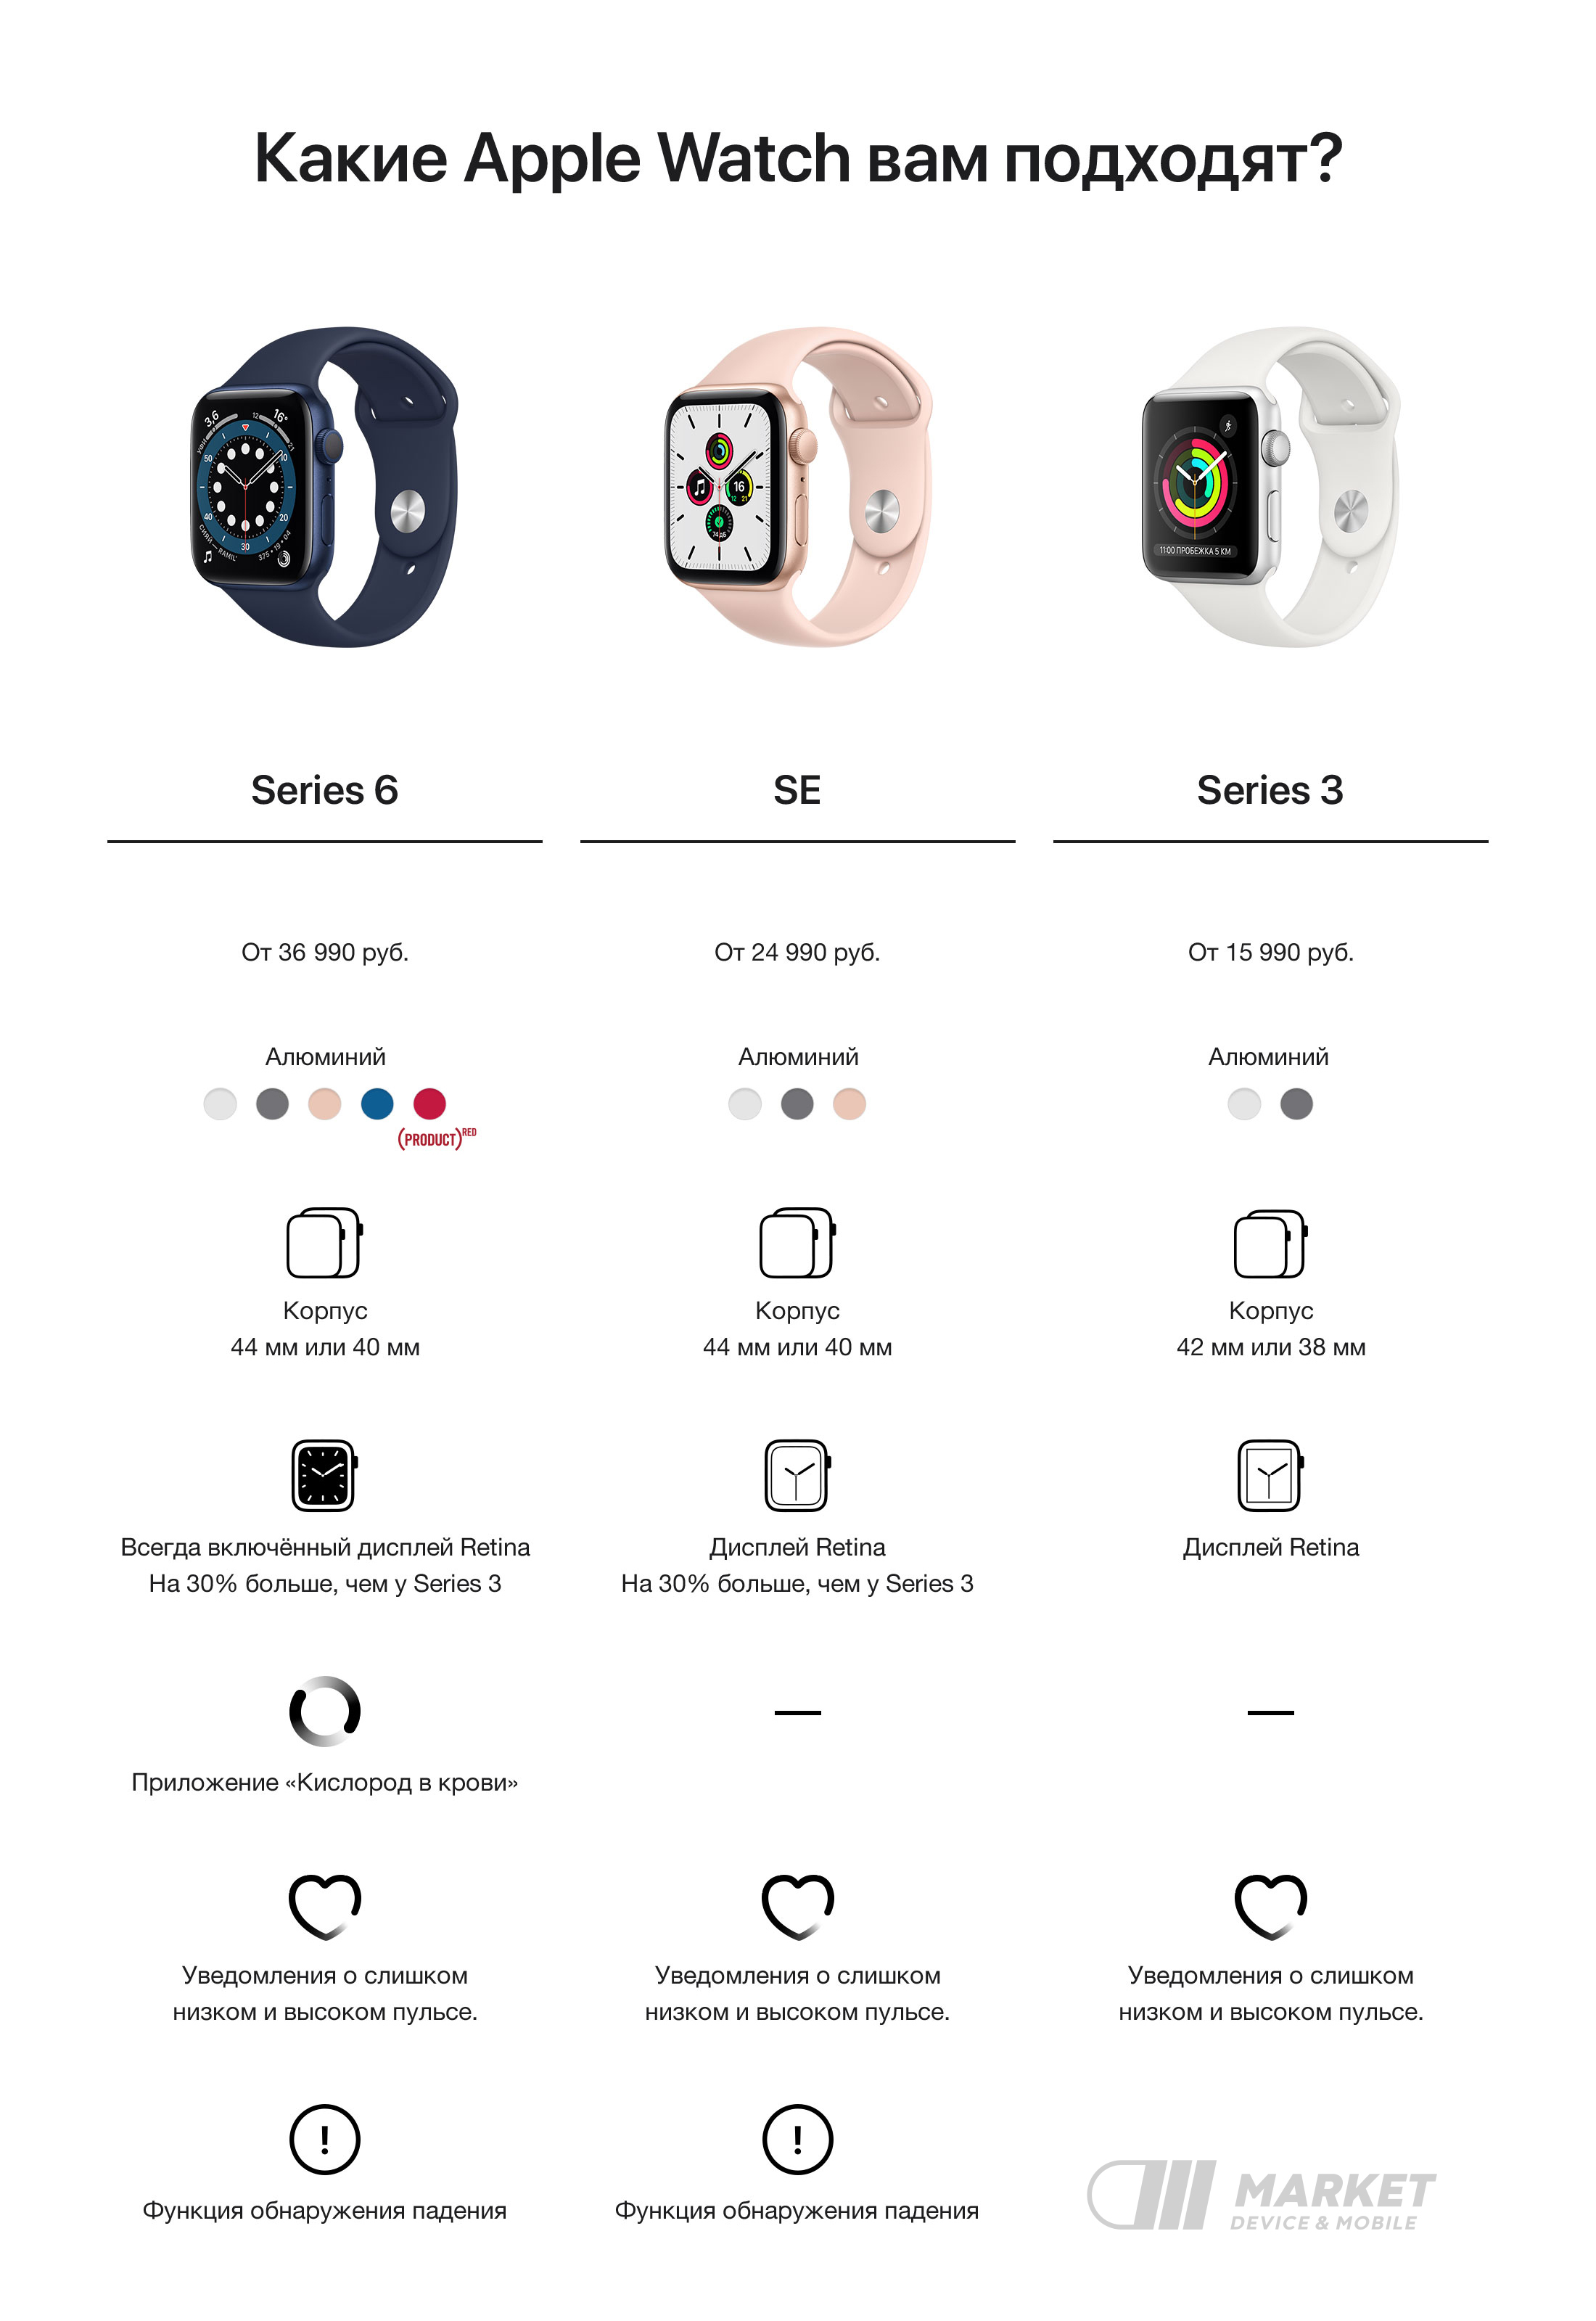 Обзор apple watch 2 — технические характеристики, функции, комплектация, основные фишки